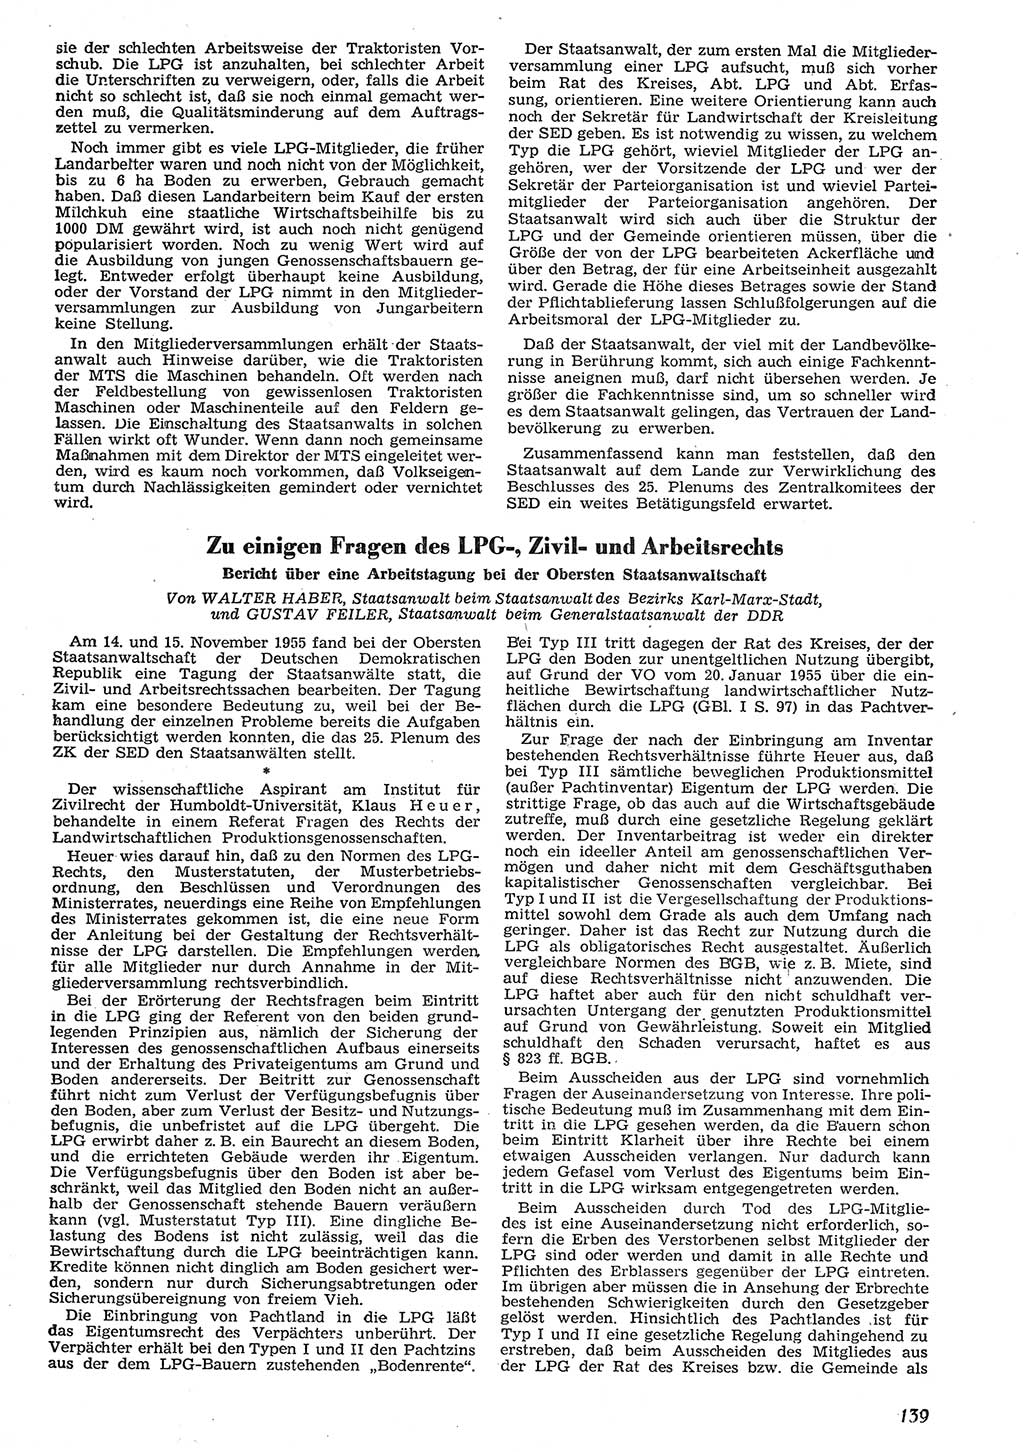 Neue Justiz (NJ), Zeitschrift für Recht und Rechtswissenschaft [Deutsche Demokratische Republik (DDR)], 10. Jahrgang 1956, Seite 139 (NJ DDR 1956, S. 139)